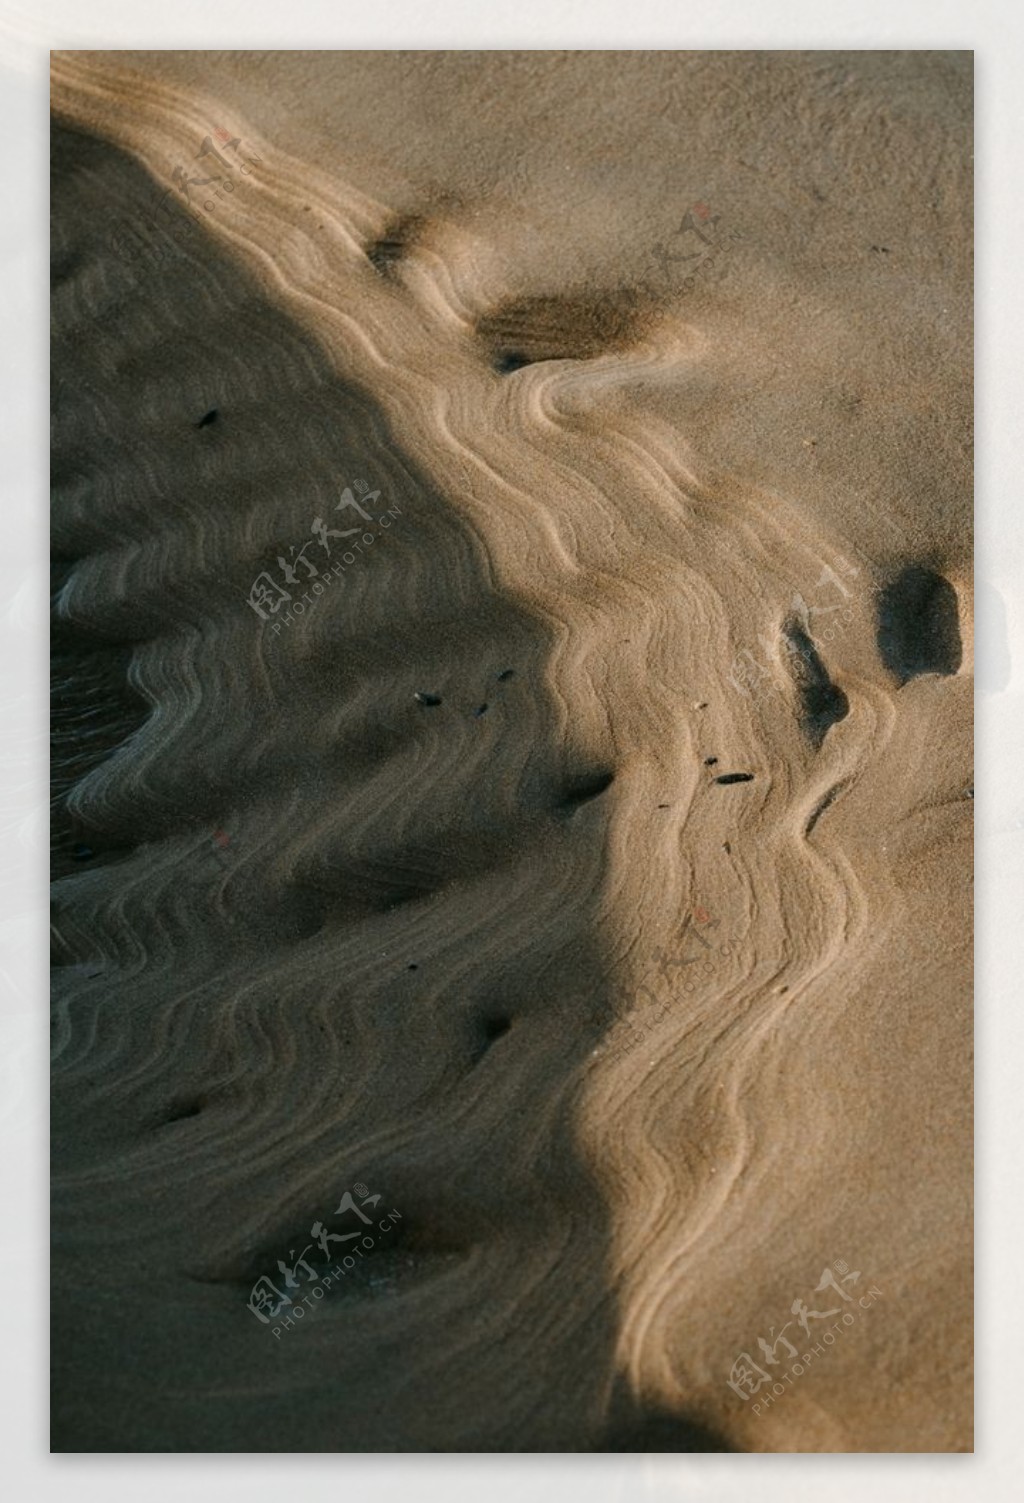 沙漠沙丘户外风景背景海报素材图片